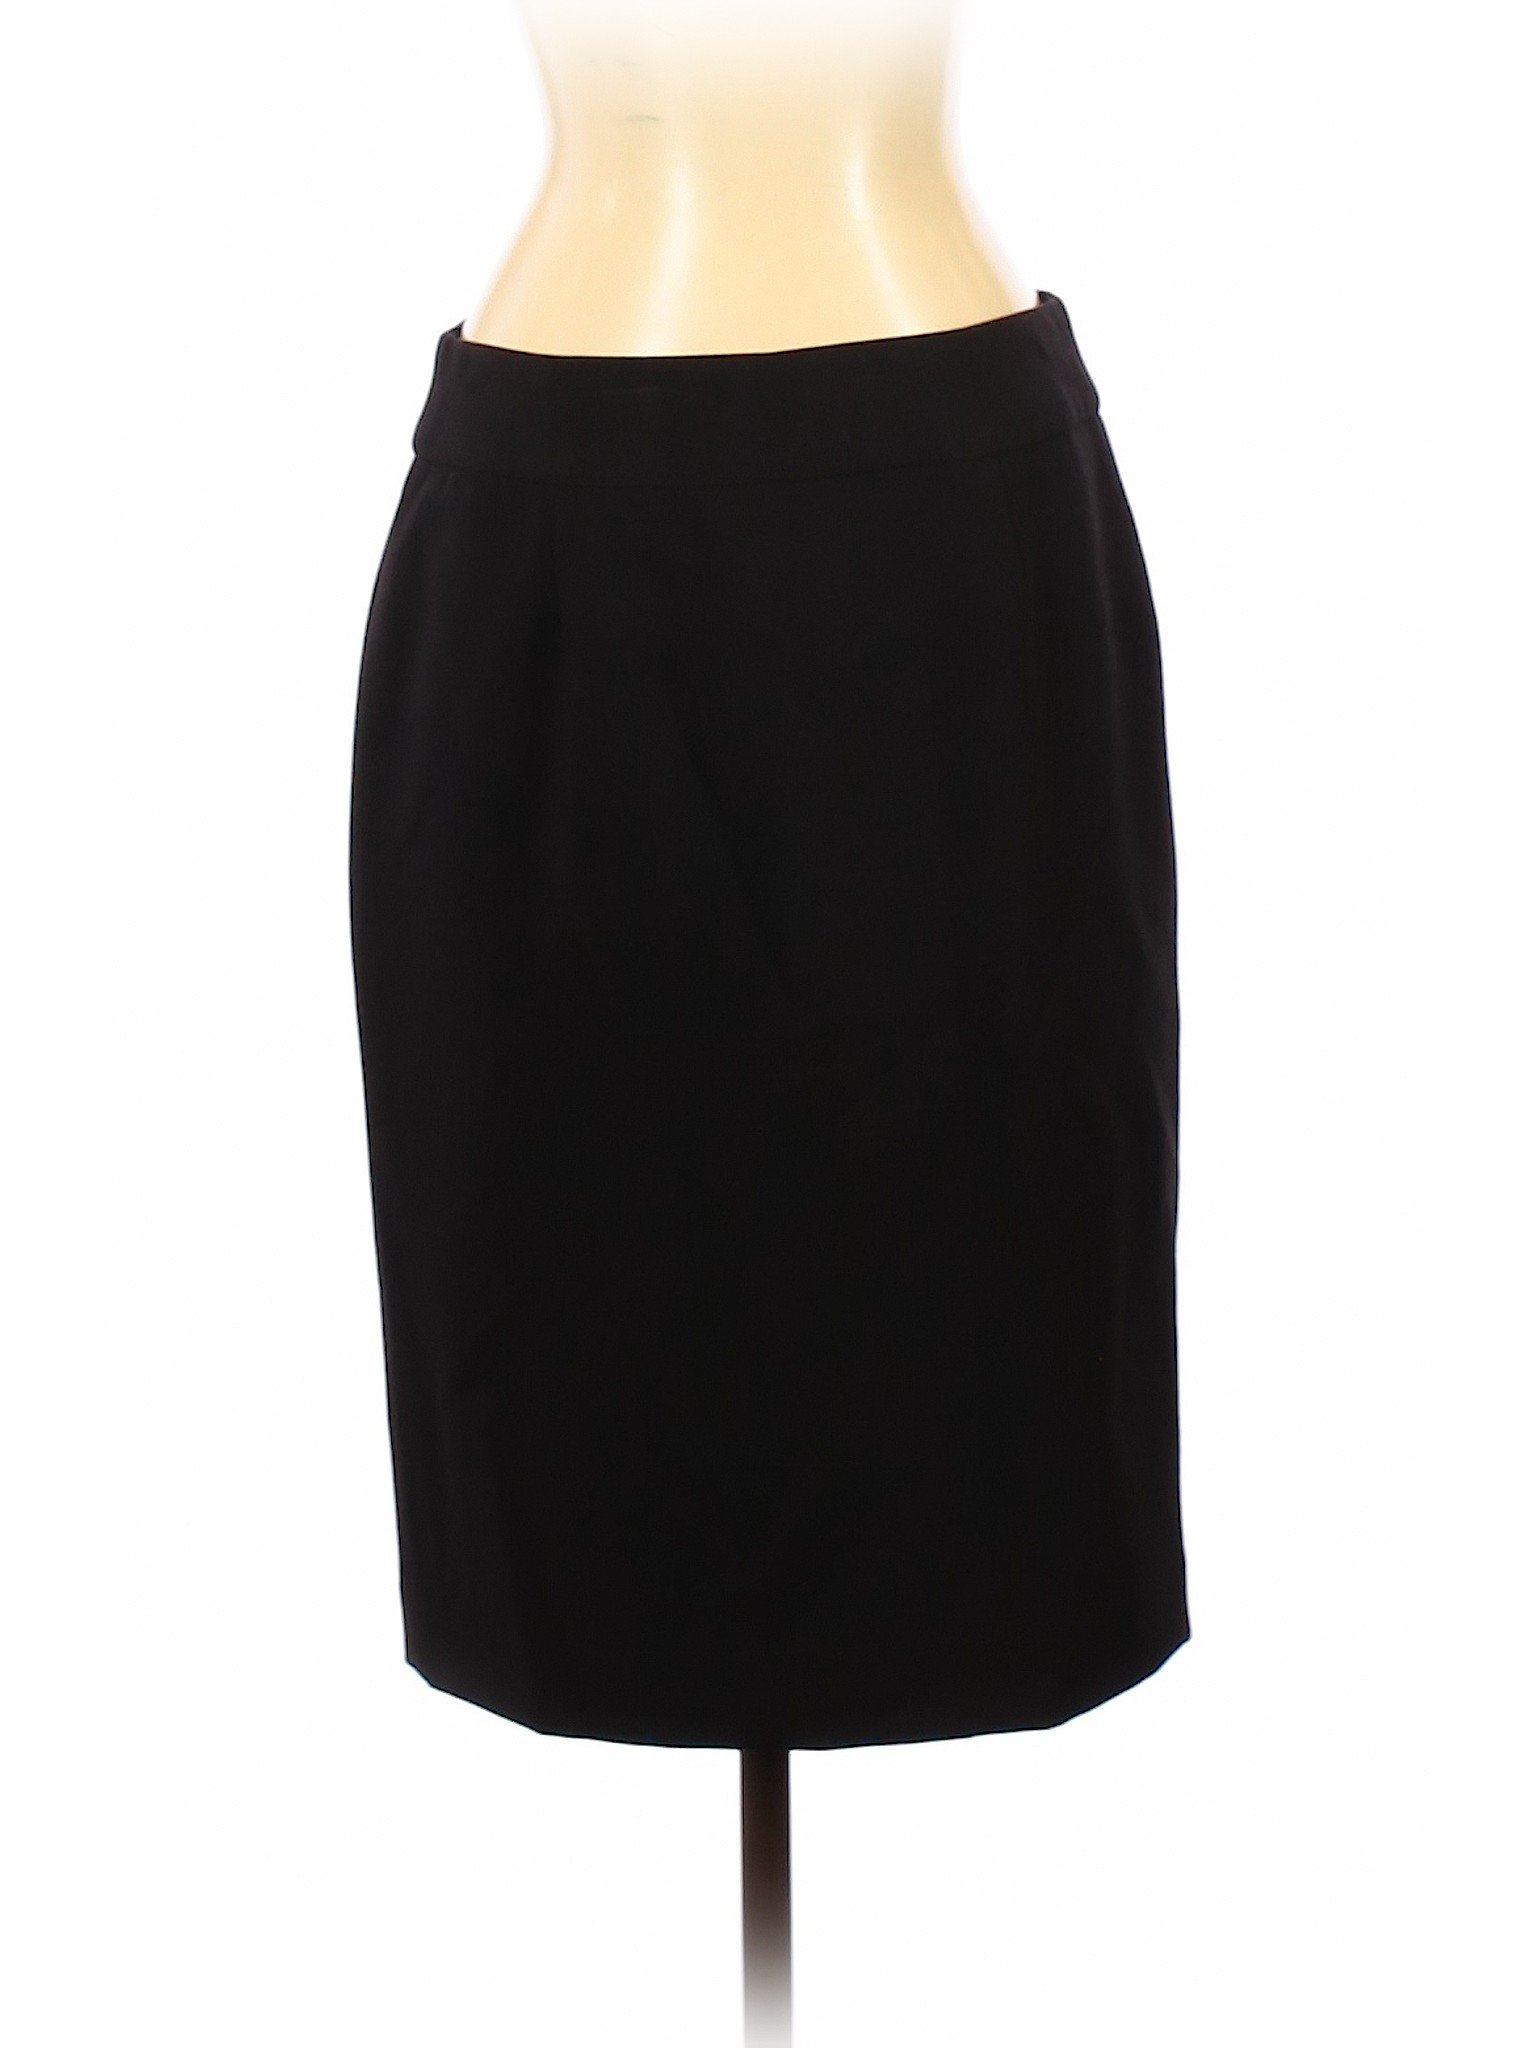 Ellen Tracy Women Black Casual Skirt 2 | eBay